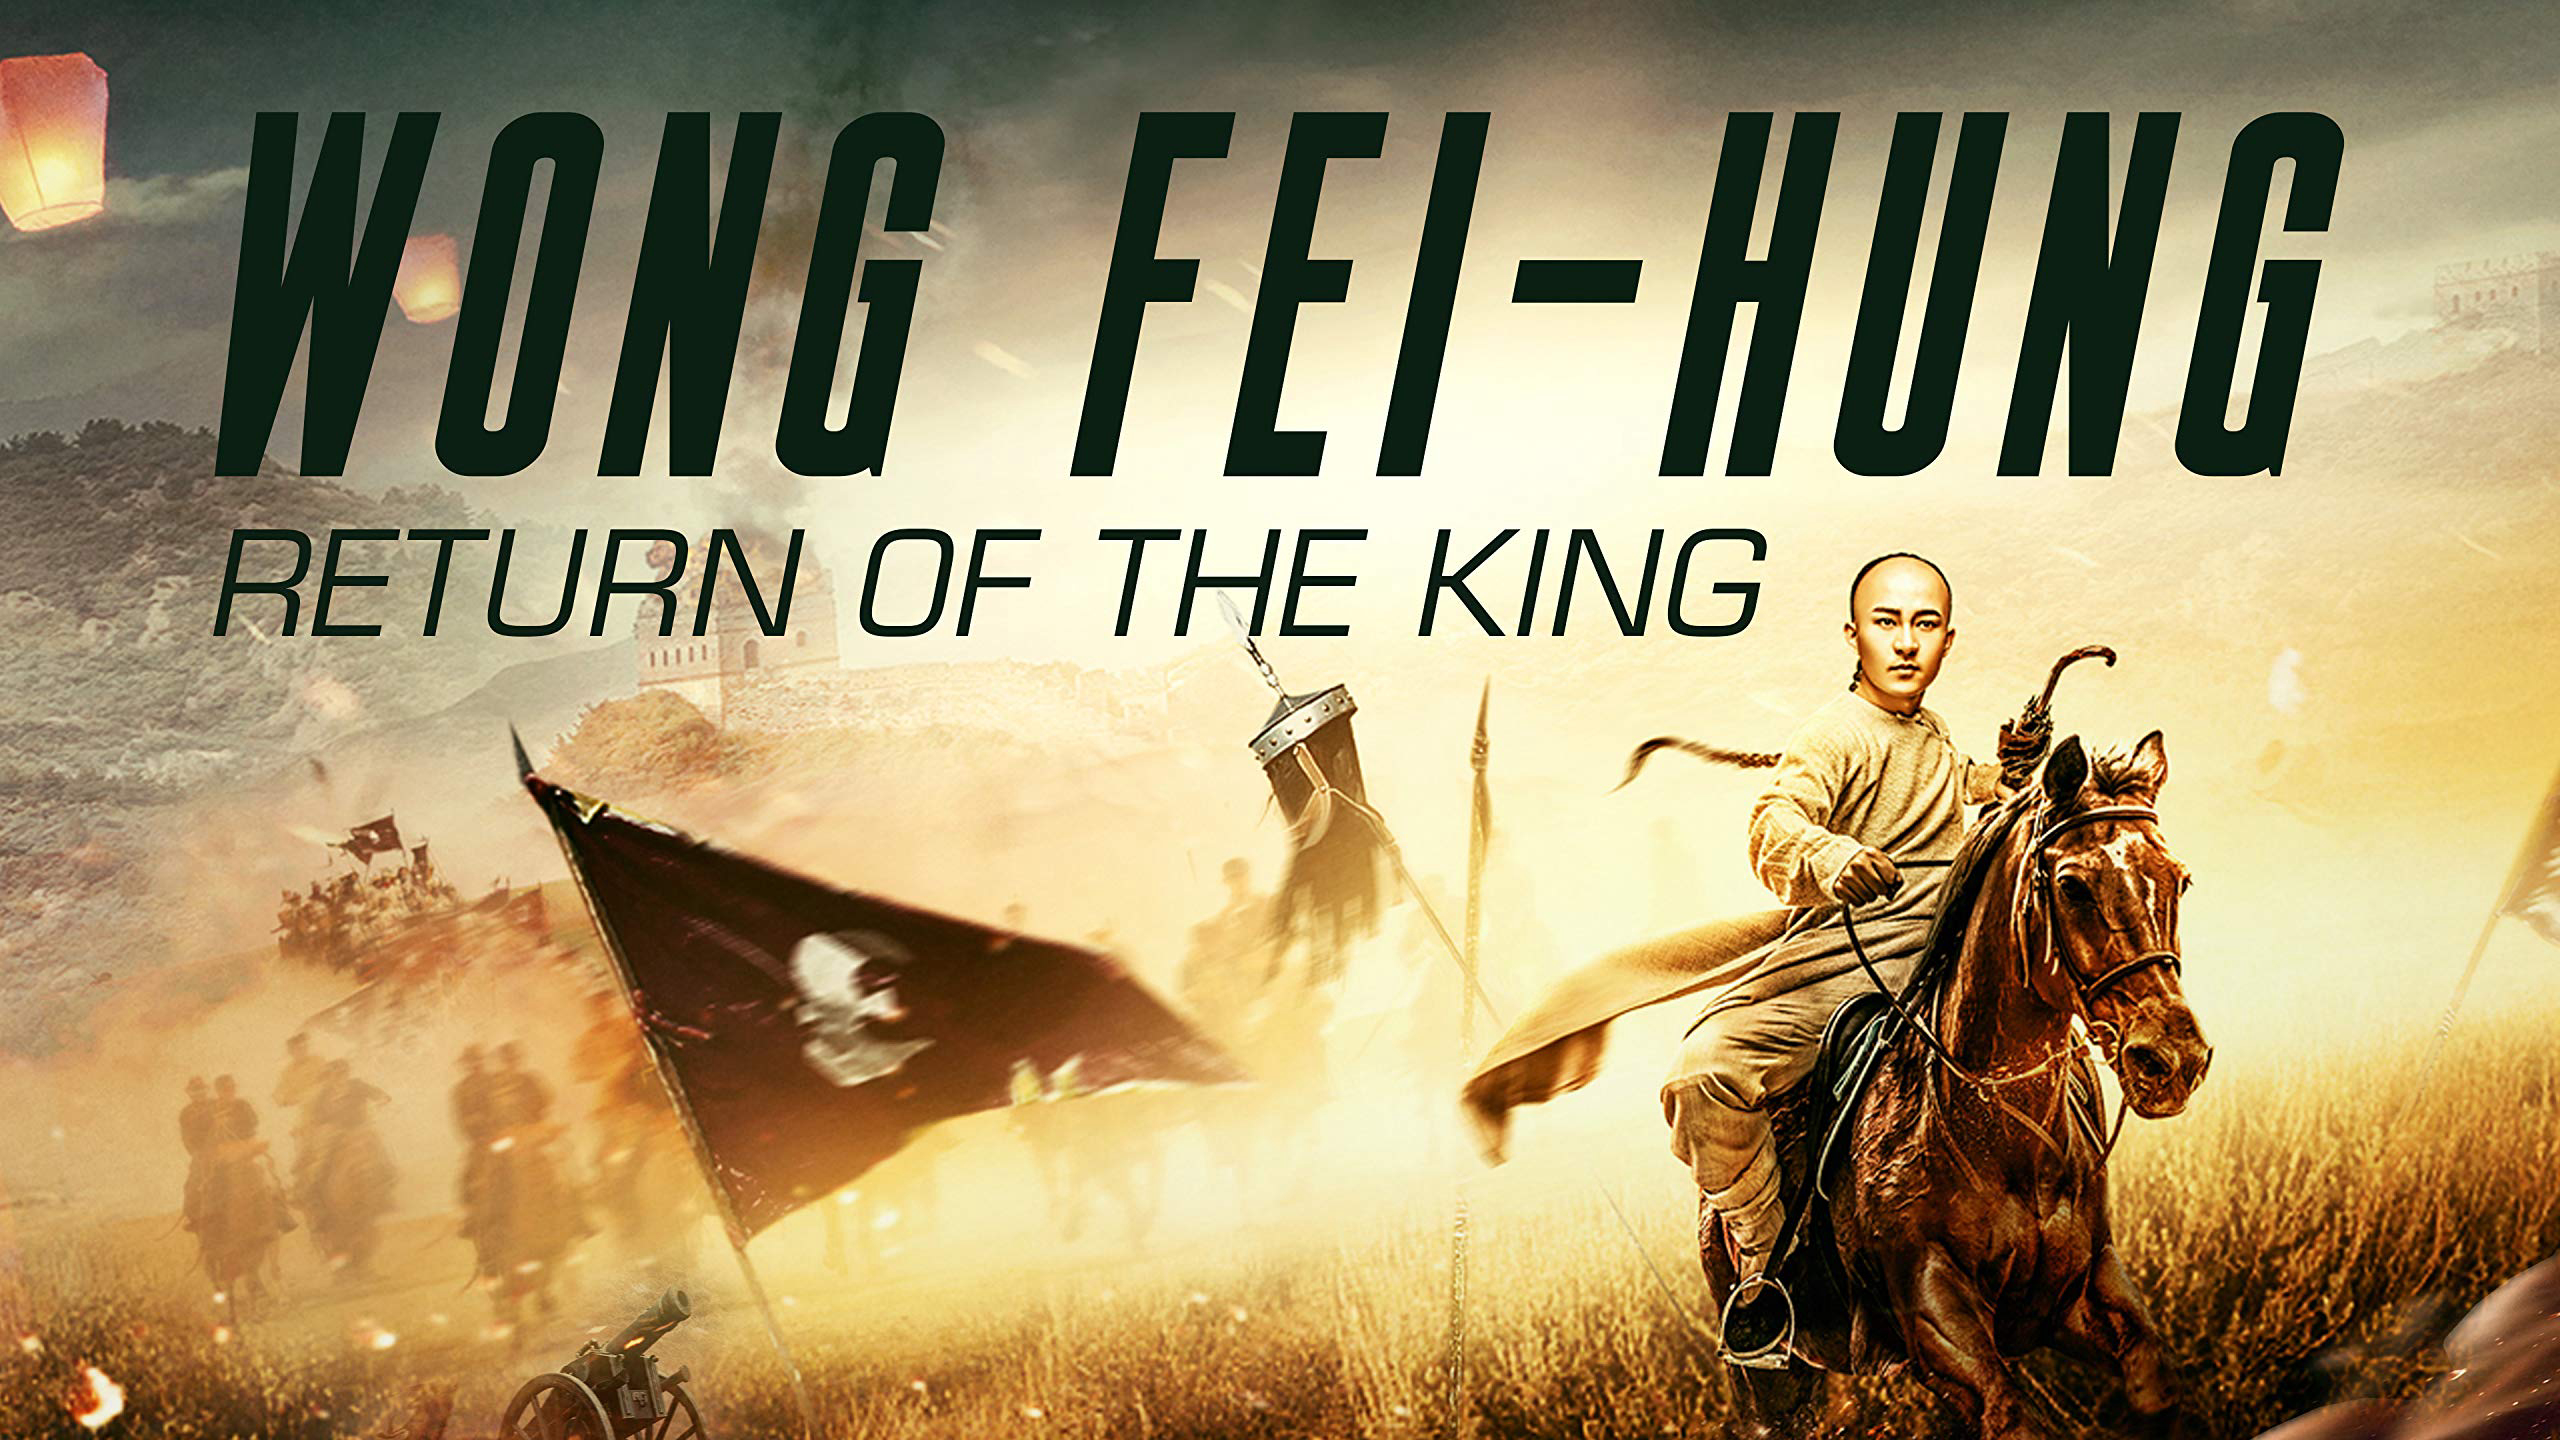 Banner Phim Hoàng Phi Hồng: Vương Giả Trở Về (Wong Fei Hung: Return of the King)